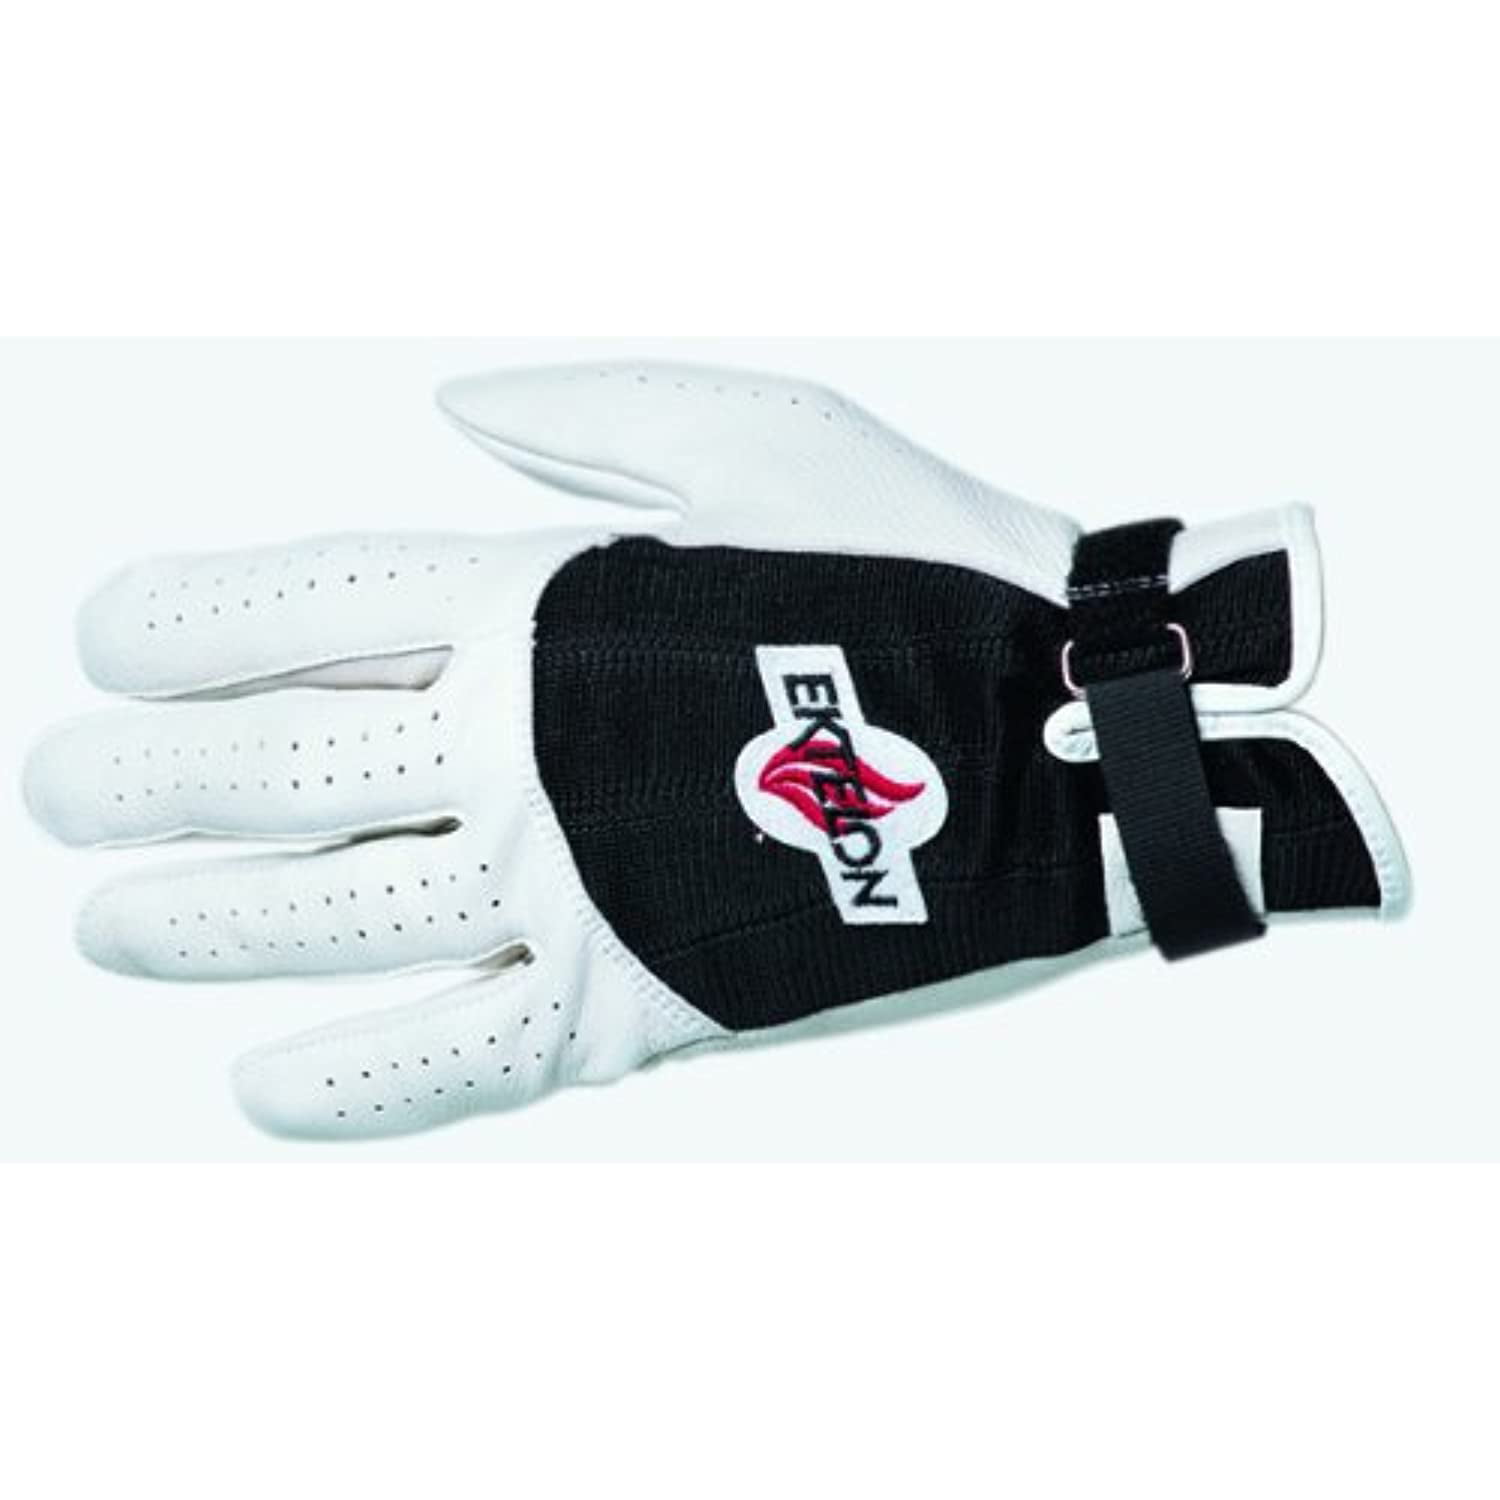 NEW Ektelon Nemesis Handball Gloves 